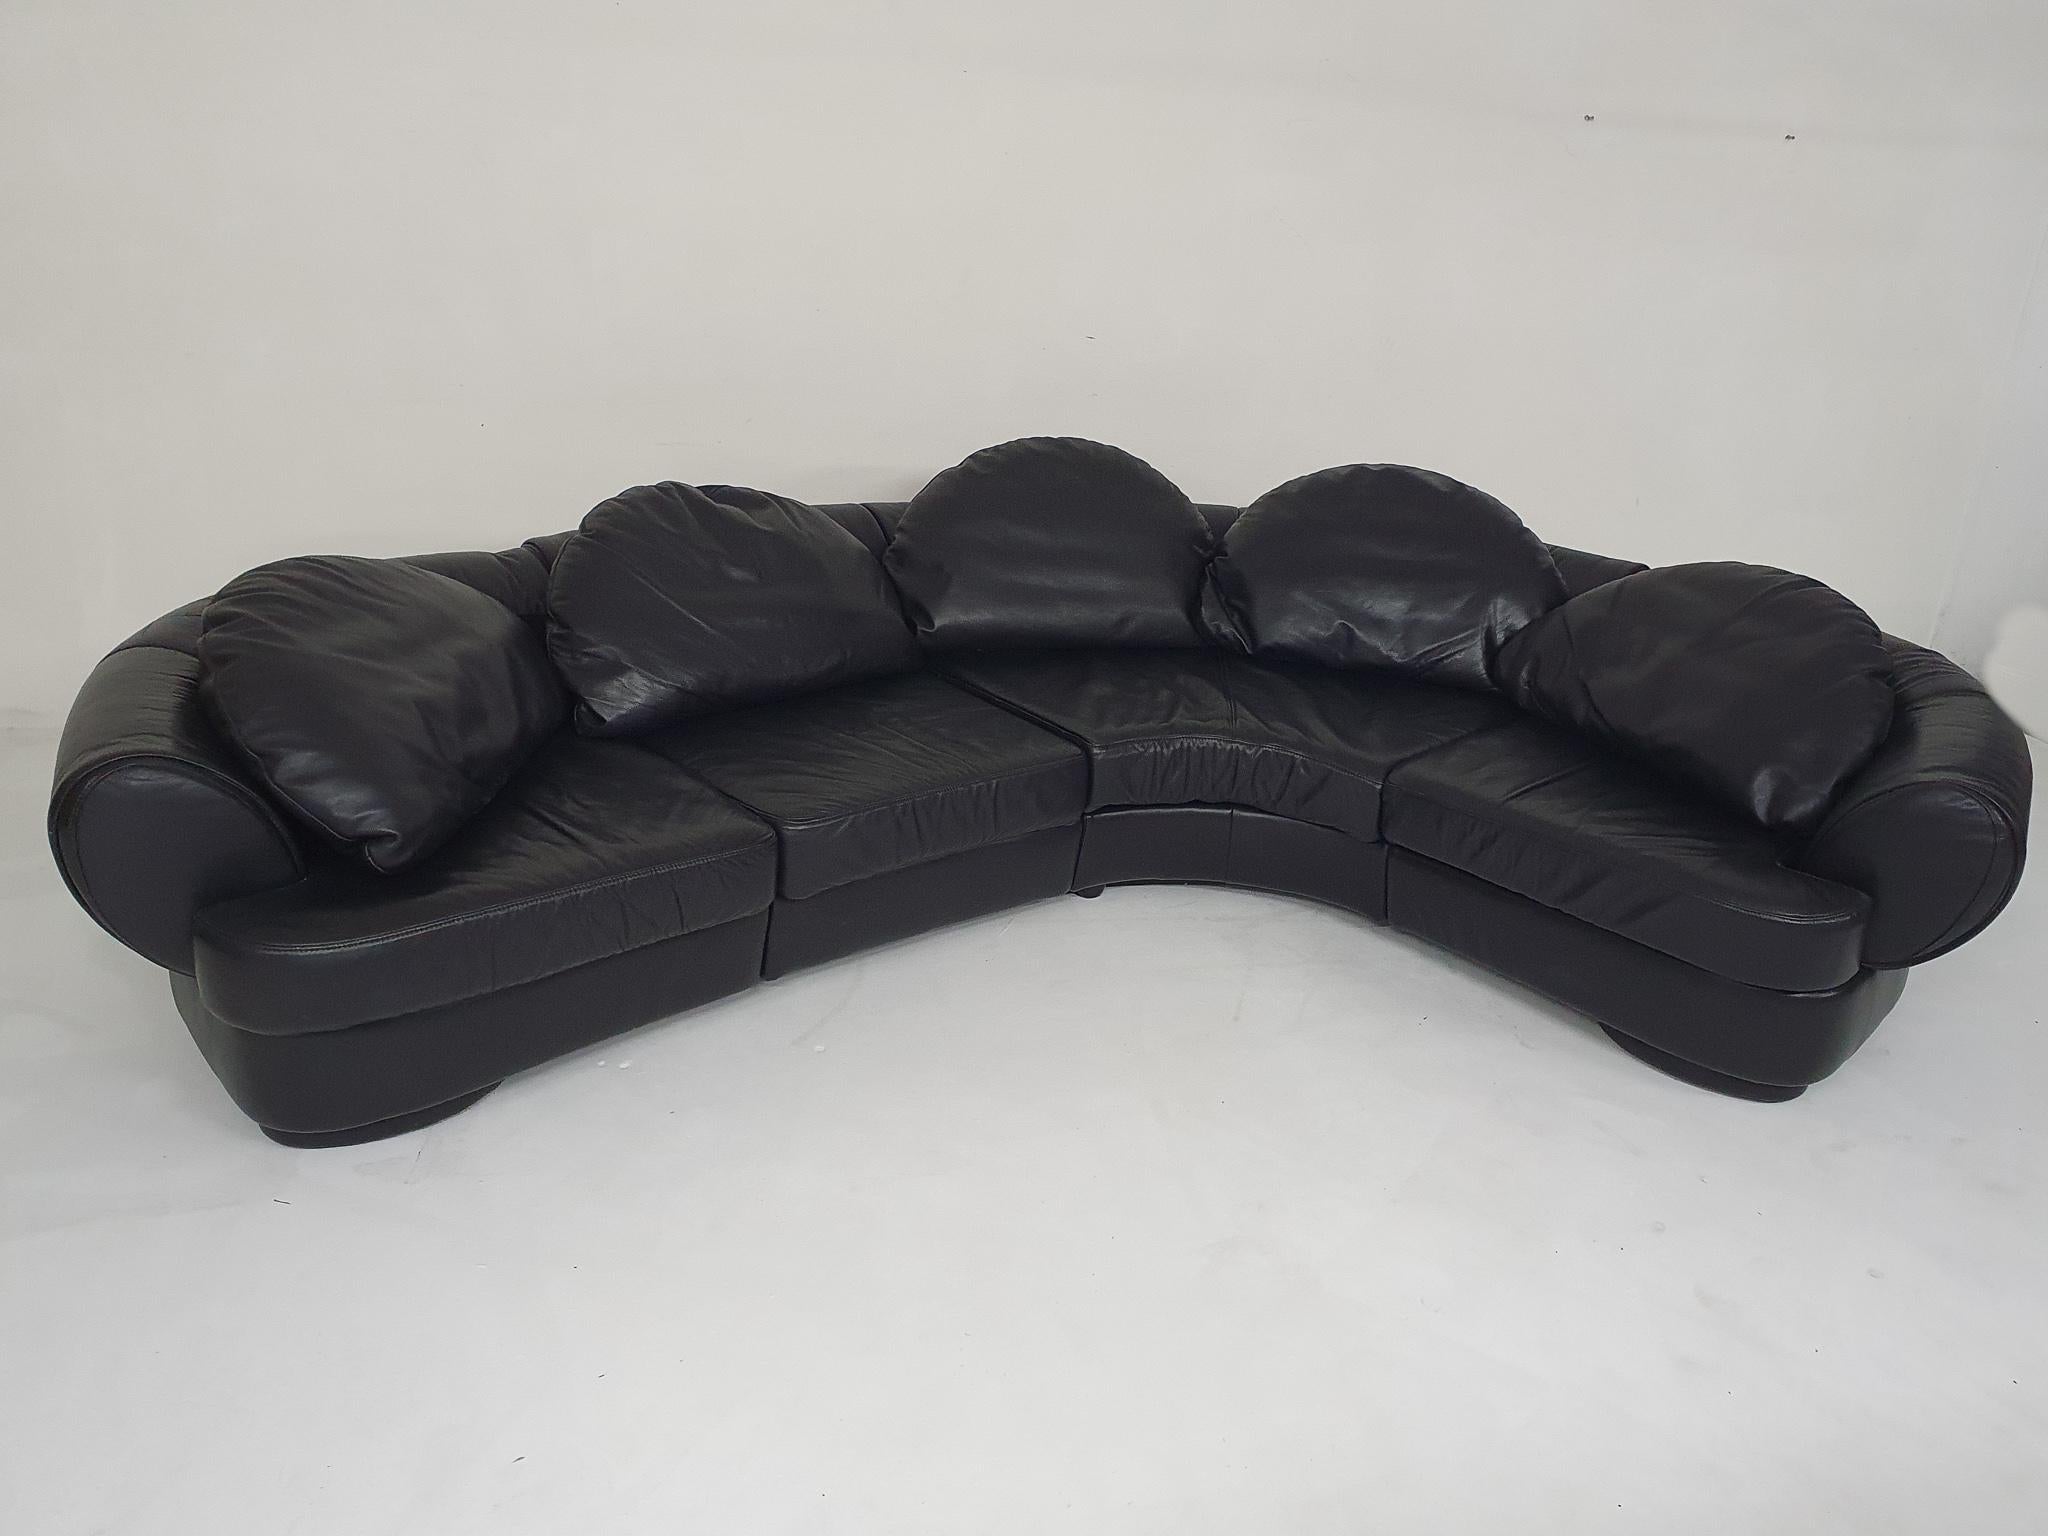 Sektionssofa mit hochwertigem schwarzem Original-Lederbezug. Das Sofa stammt aus den 80er Jahren, ist aber noch in gutem Zustand. Er besteht aus 4 Teilen, die mit Metallstiften aneinander befestigt sind. Die mondförmigen Rückenkissen werden mit